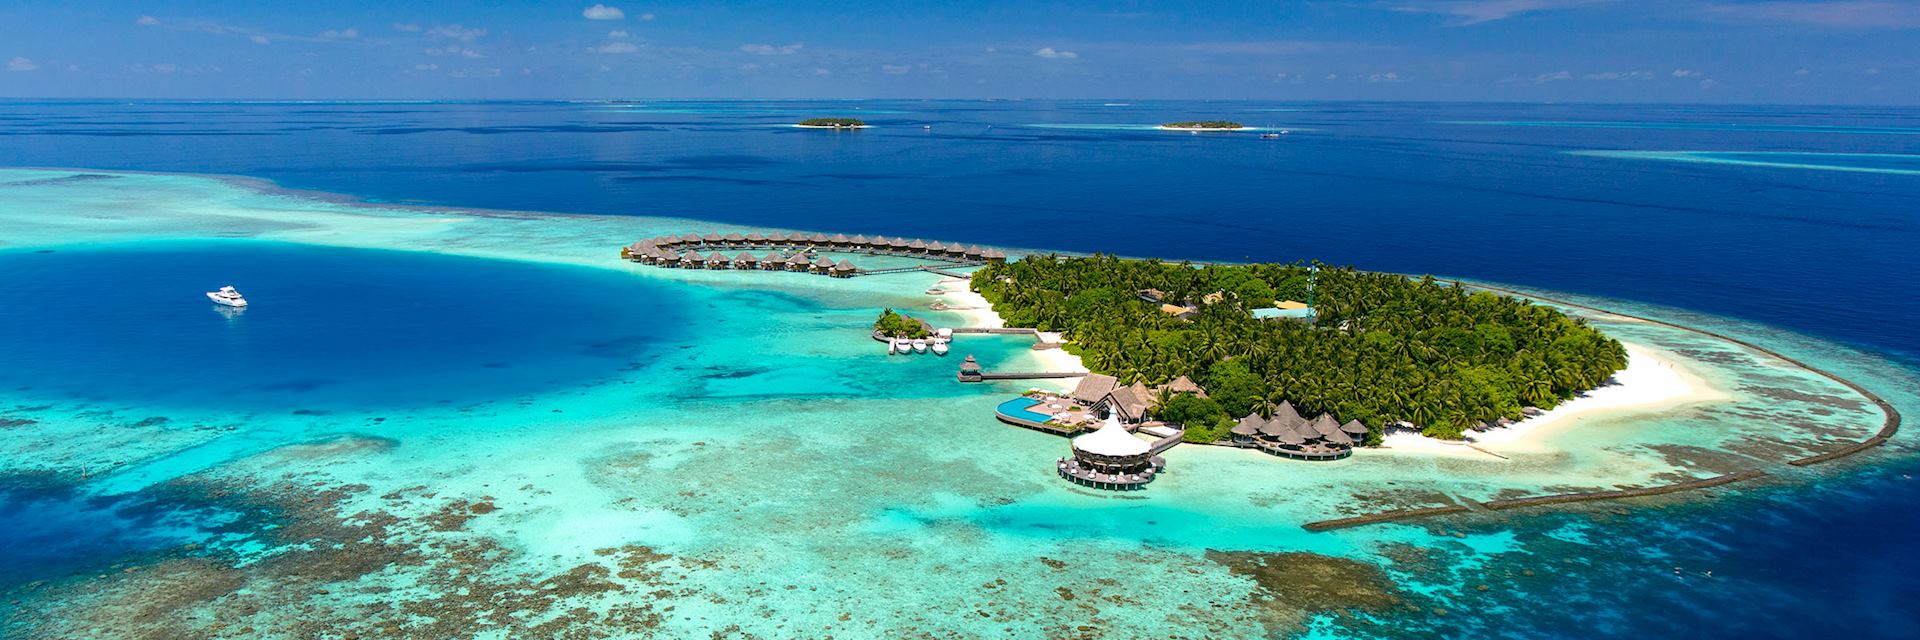 Baros, the Maldives